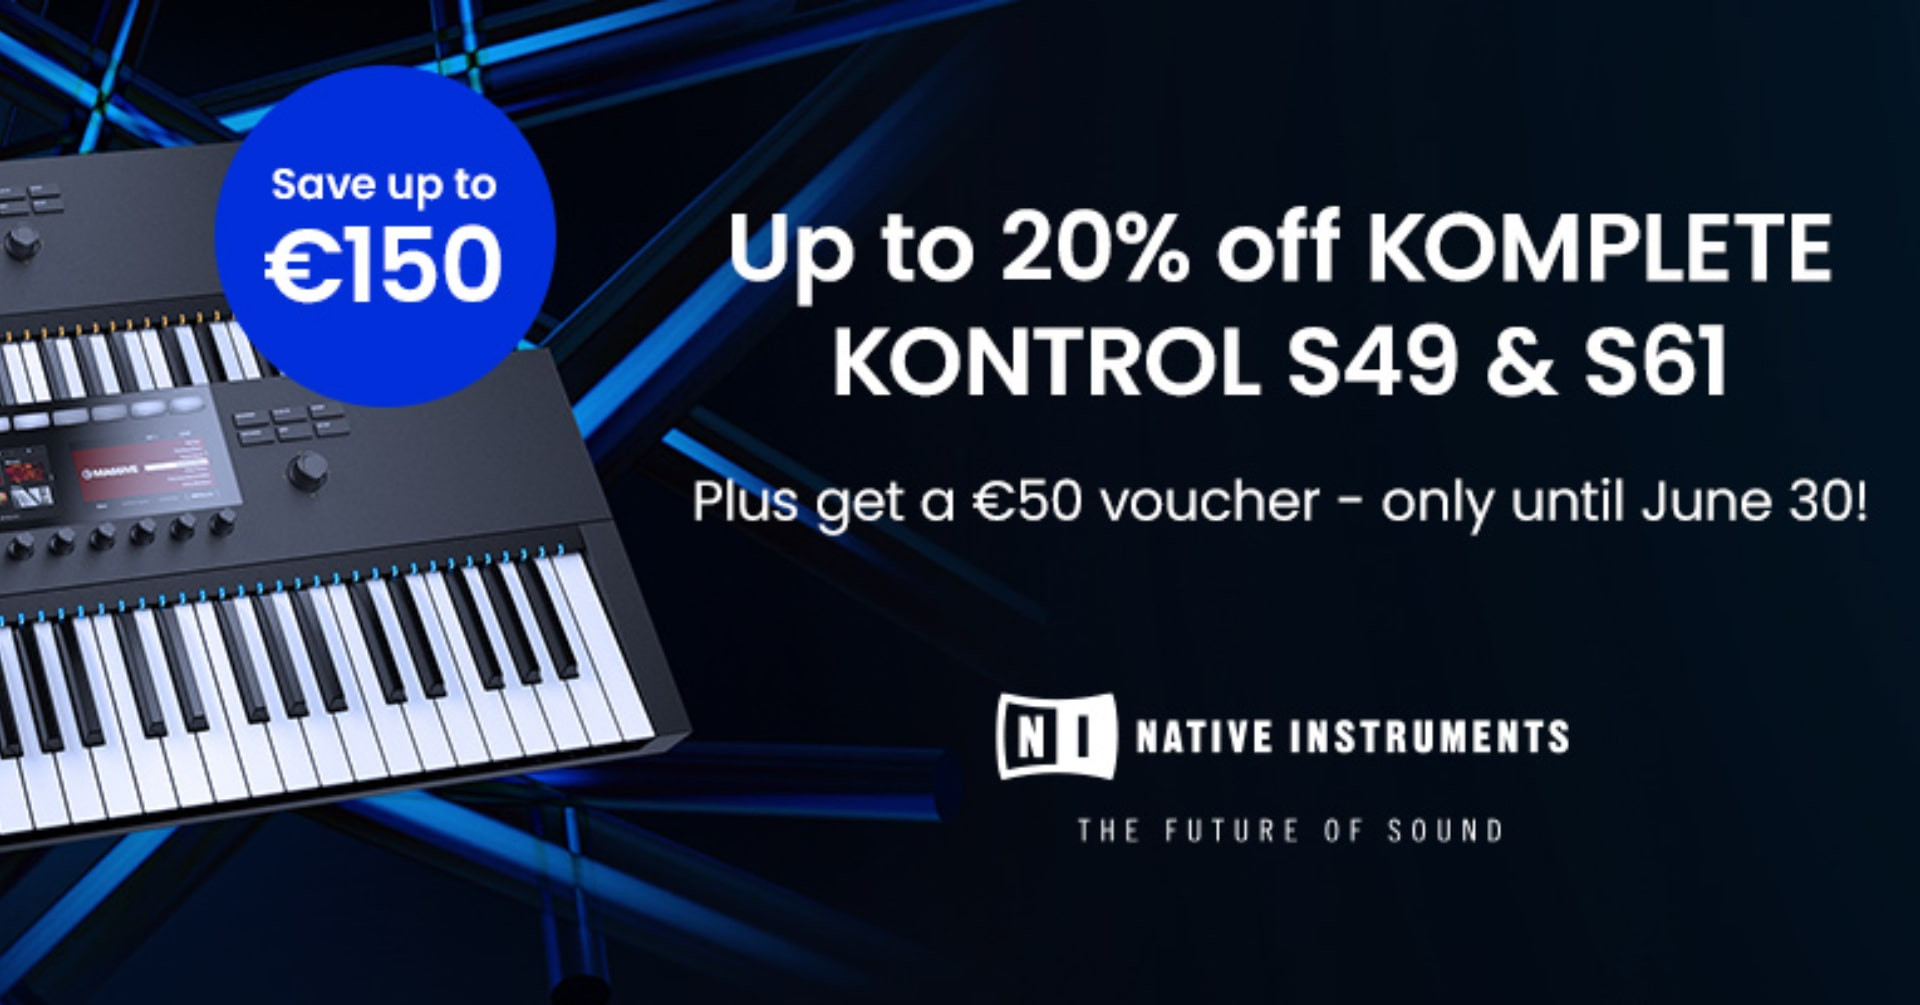 PROMOCJA: kup klawiaturę Native Instruments i odbierz Komplete 14 i voucher na 50 euro ZA DARMO!